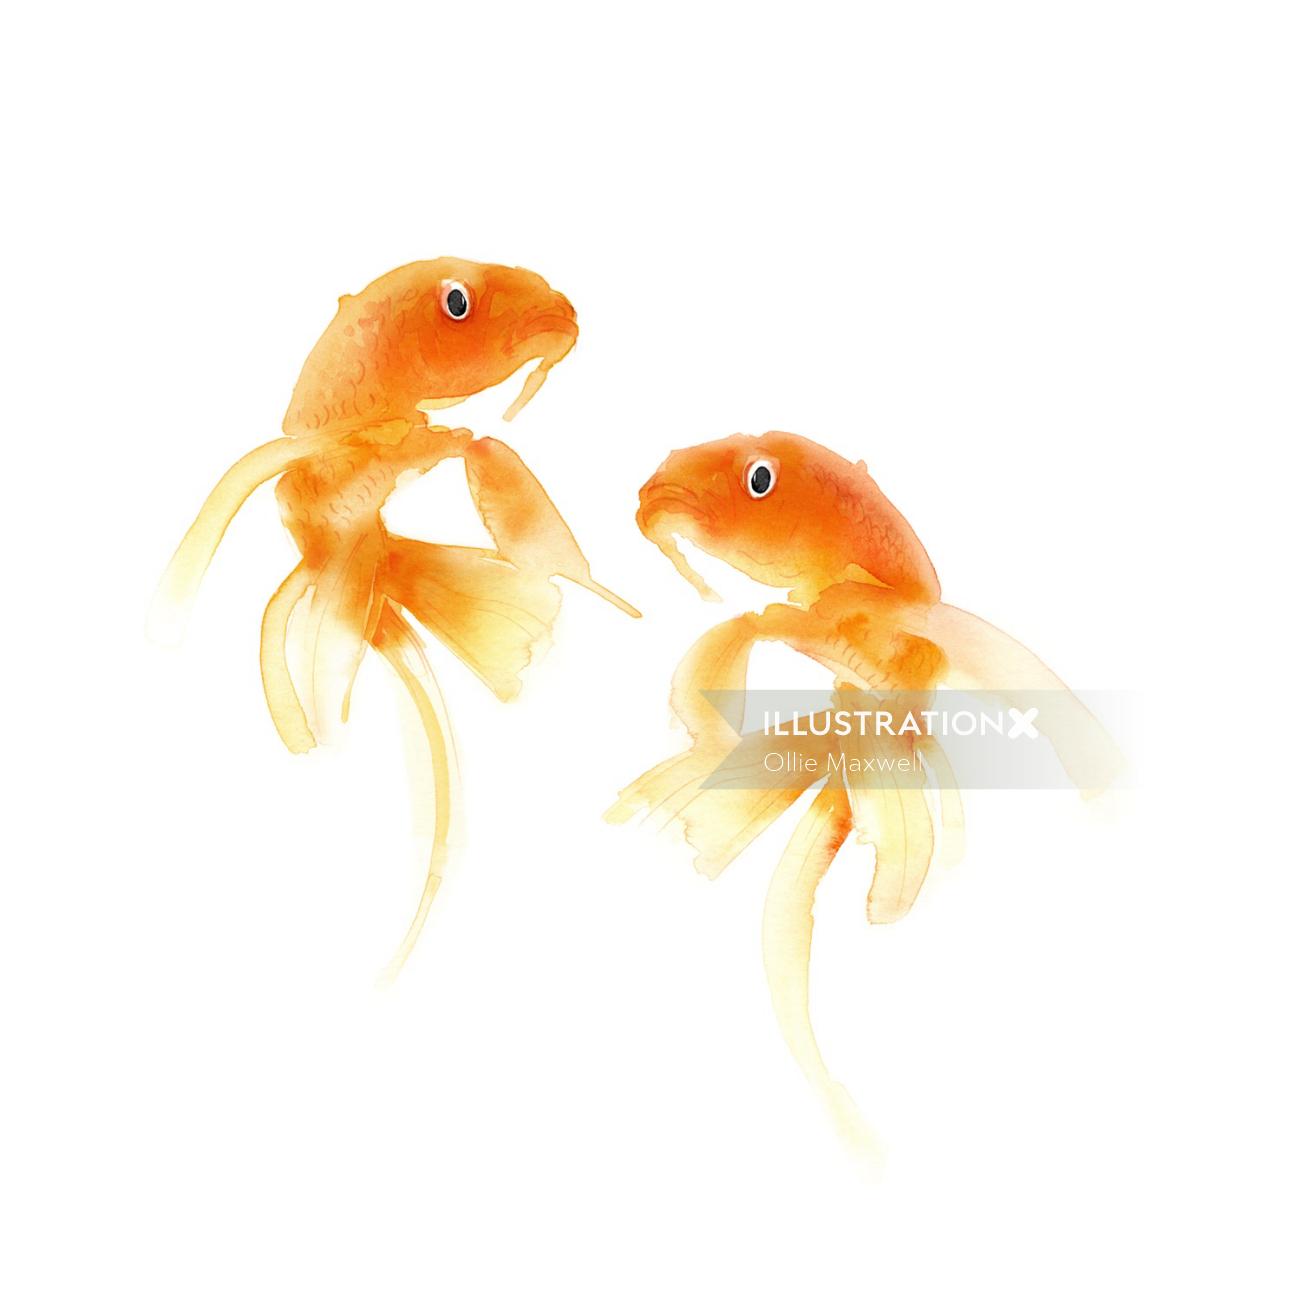 金魚の水彩画